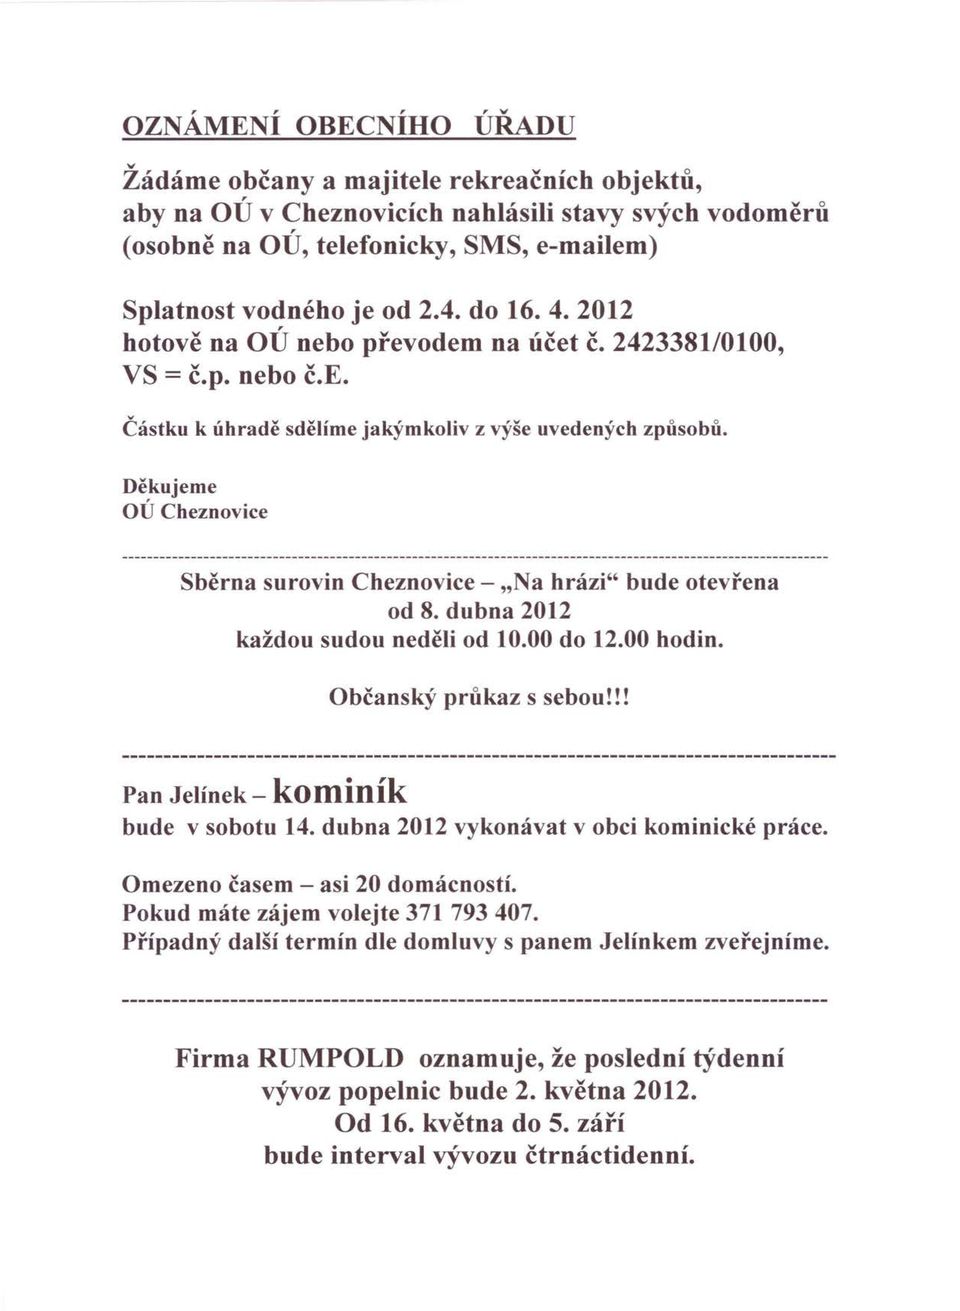 Děkujeme OÚ Cheznovice Sběrna surovin Cheznovice - "Na hrázi" bude otevřena od 8. dubna 2012 každou sudou neděli od 10.00 do 12.00 hodin. Občanský průkaz s sebou!